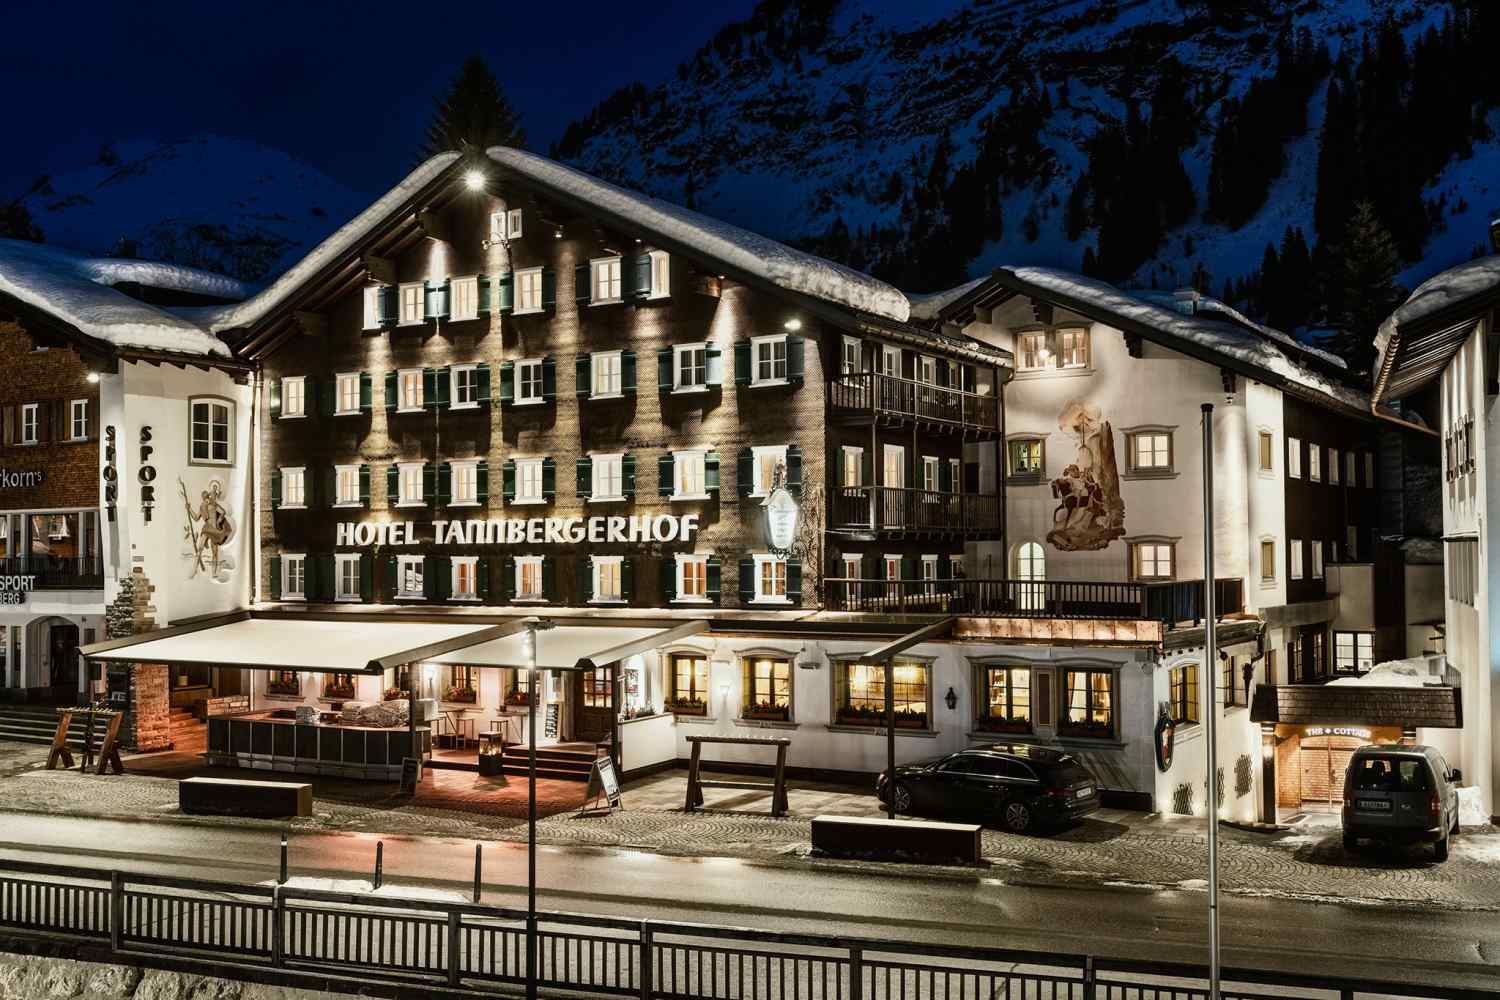 Hotel Tannbergerhof Lech, Vorarlberg - Austria